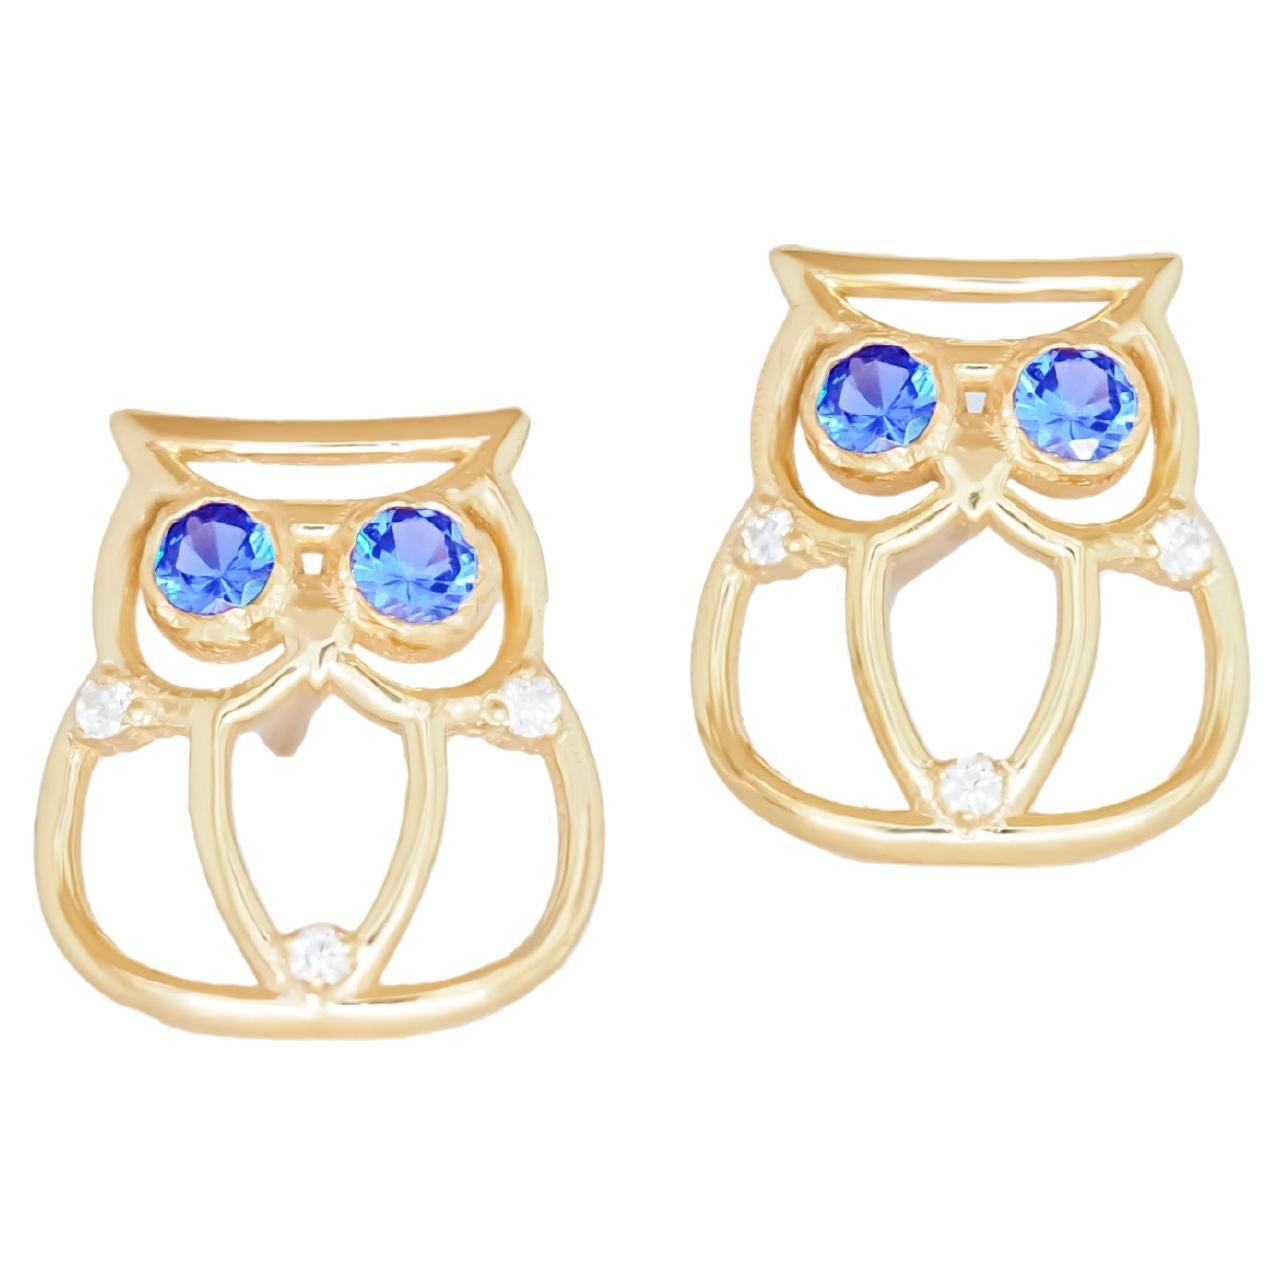 Owl earrings in 14k gold.  For Sale